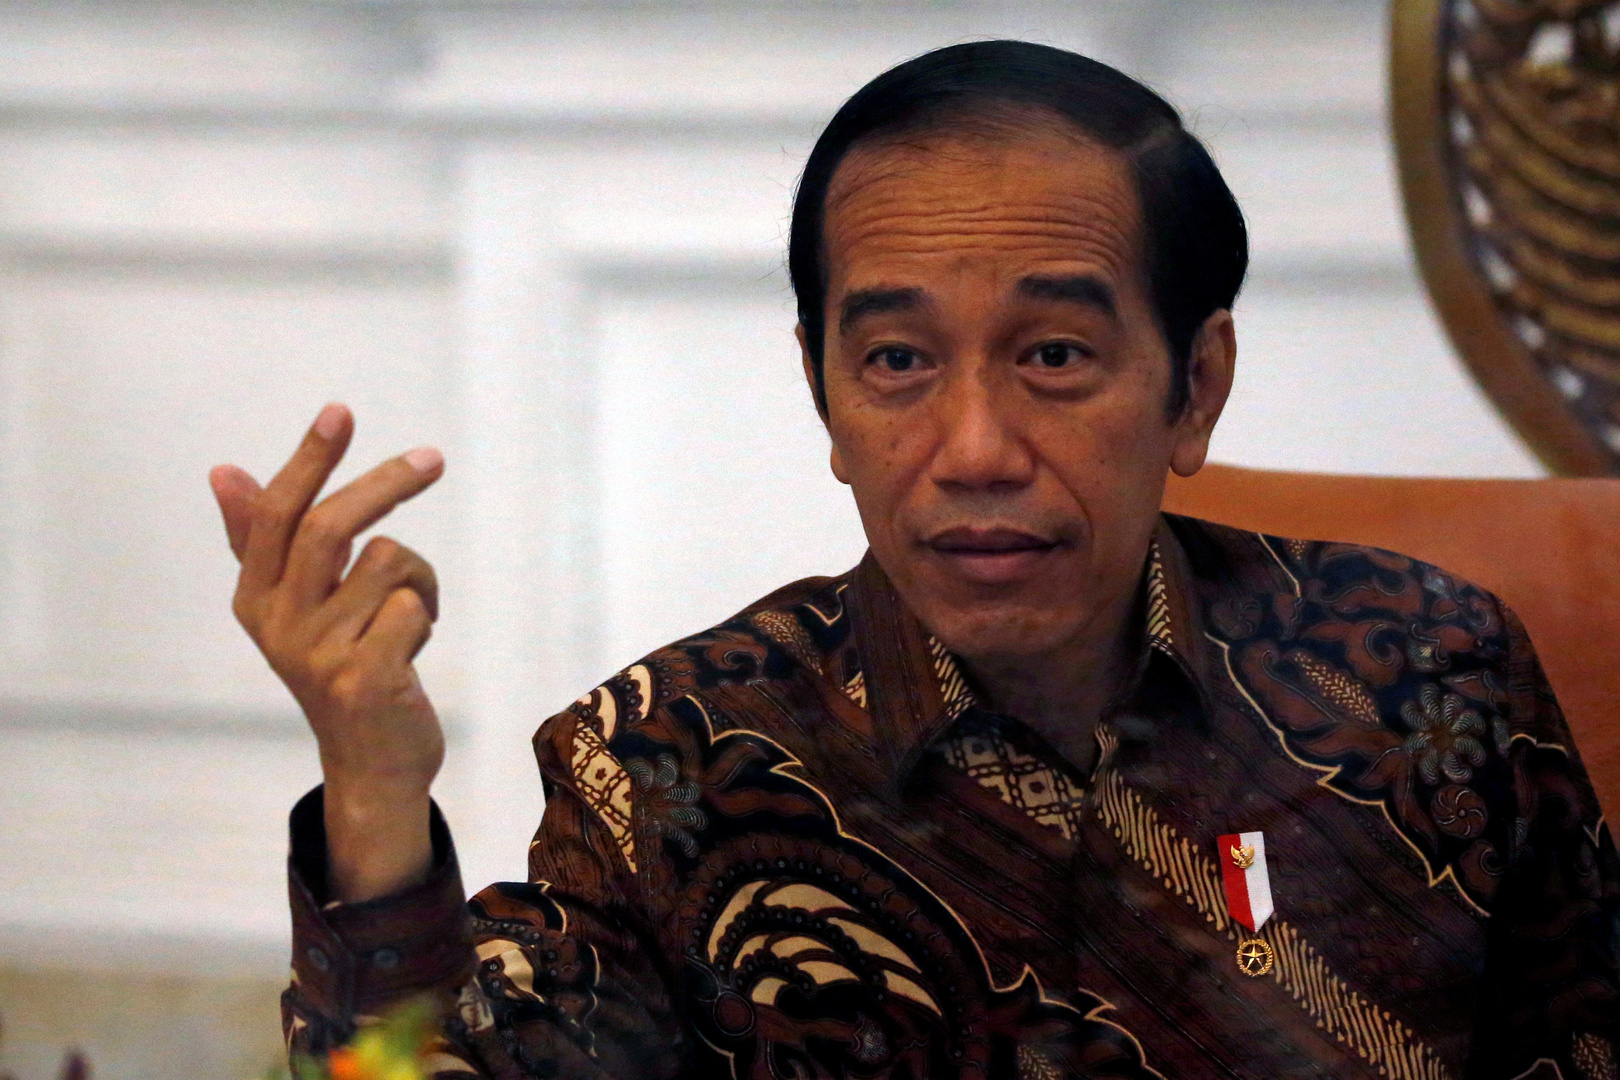 رئيس إندونيسيا يدعو لفرض قيود على التنقل في عدة مناطق لمكافحة كورونا